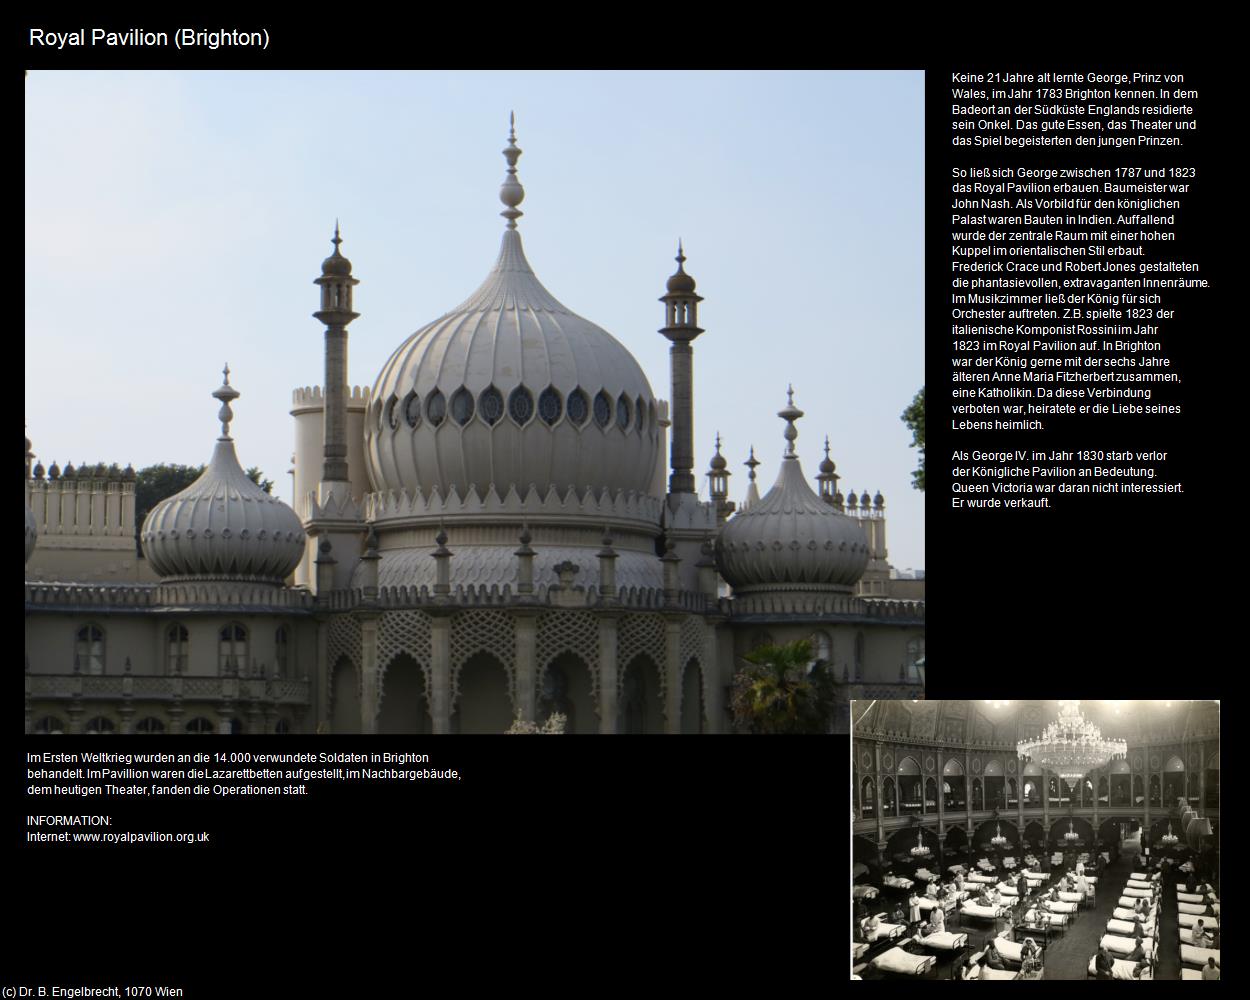 Royal Pavilion (Brighton, England) in Kulturatlas-ENGLAND und WALES